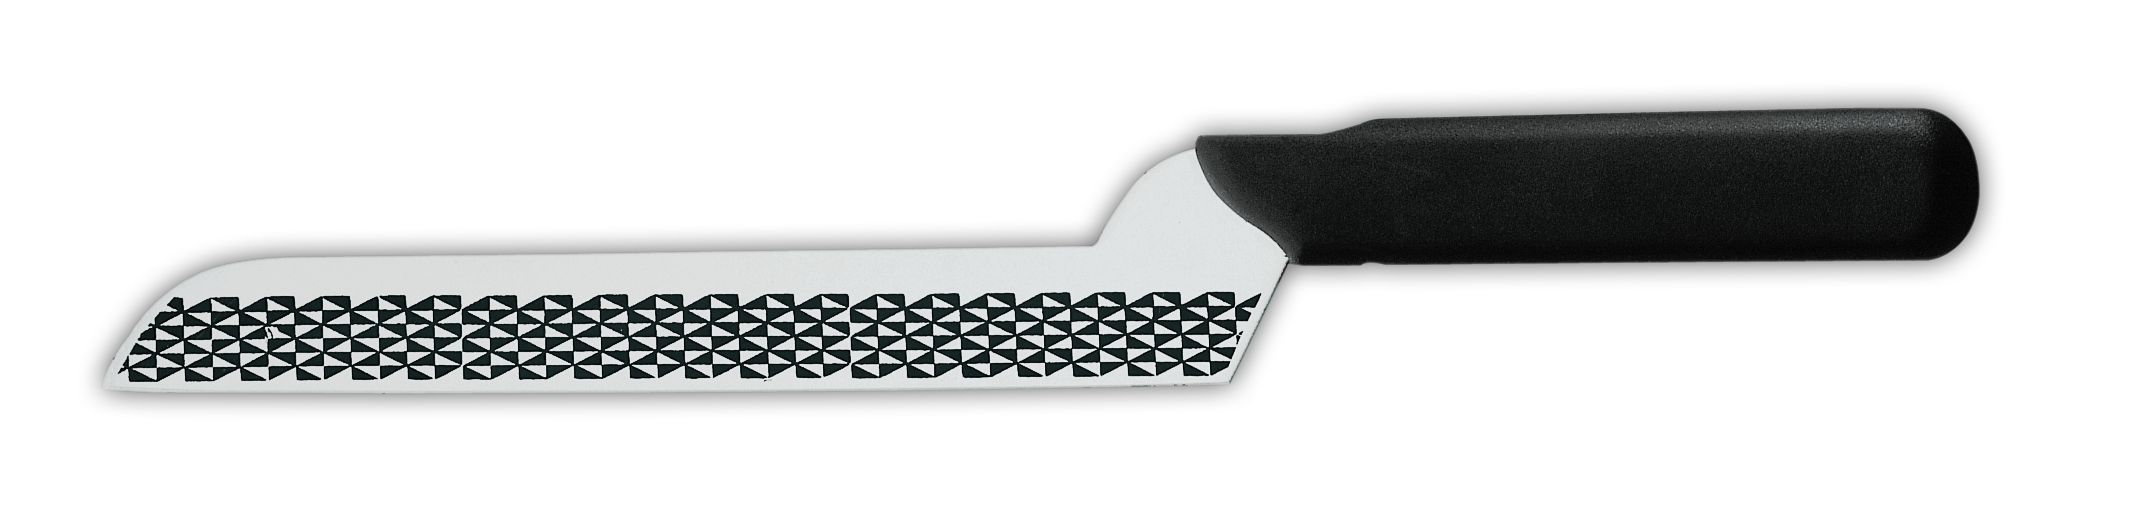 Нож для сыра 9605g, лезвие с травлением, 23 см,  черная рукоятка